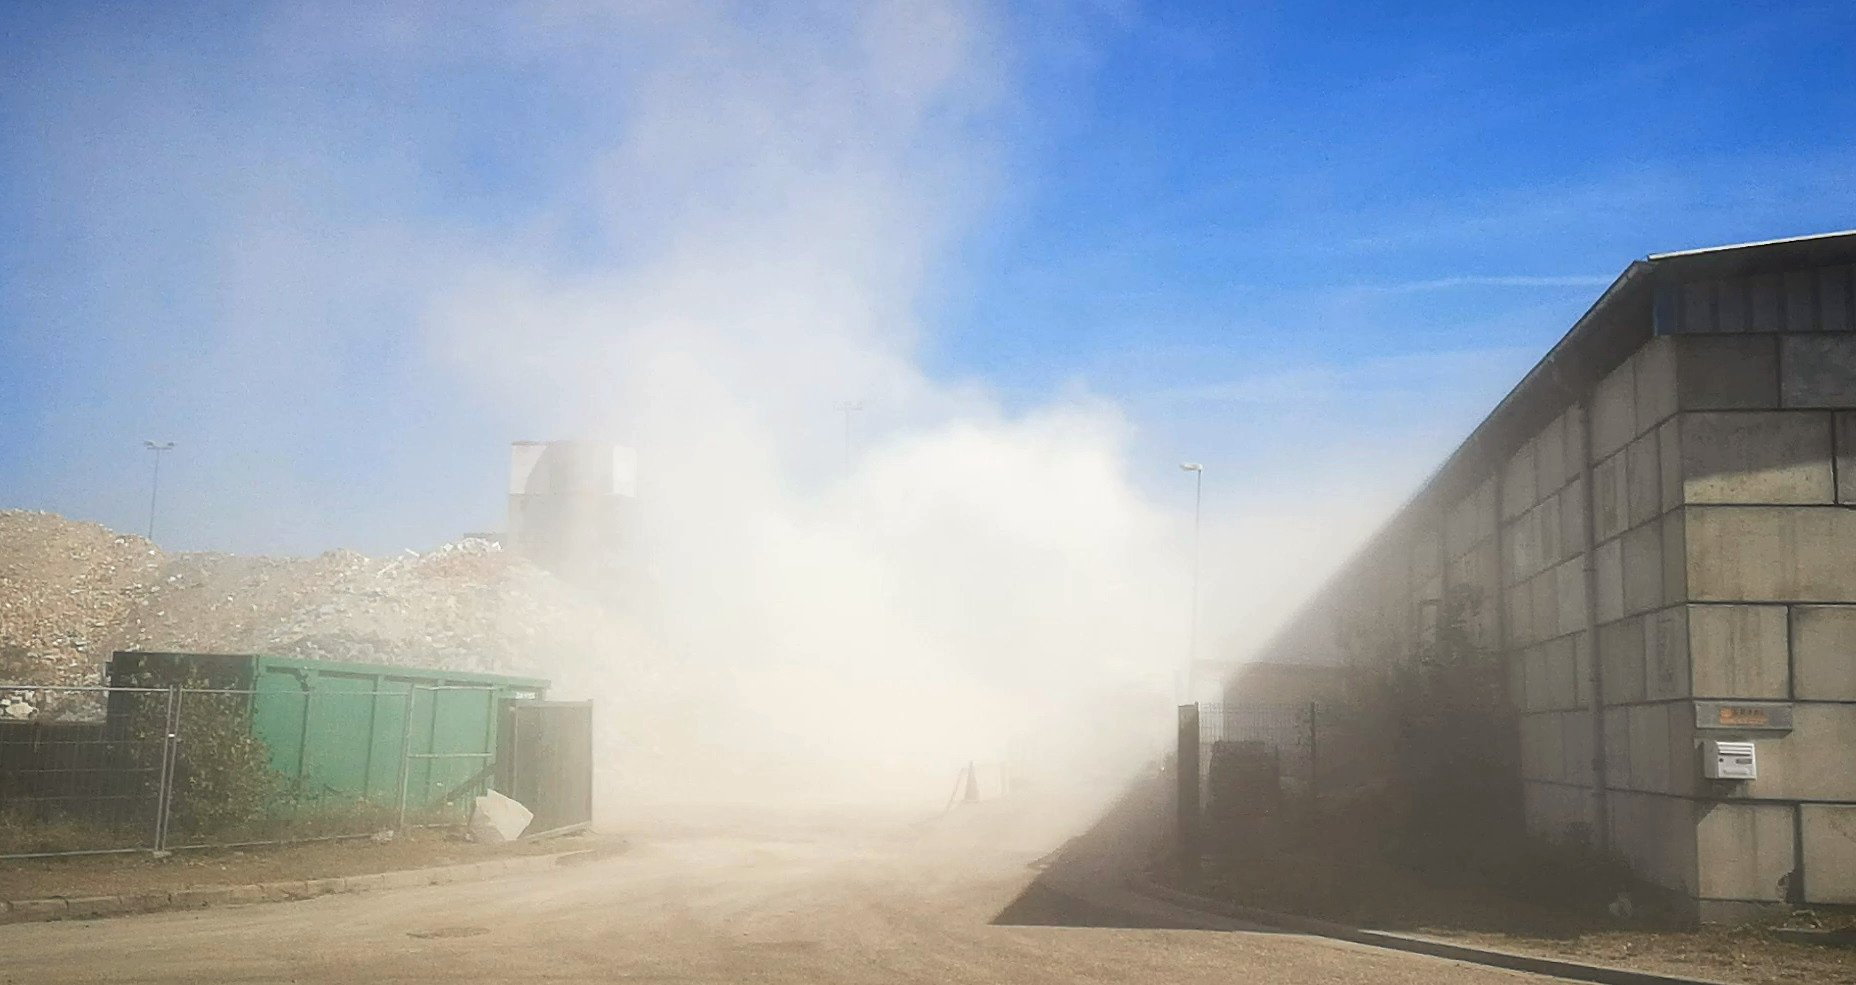 La justice suspend une activité générant des poussières dangereuses au Port du Rhin